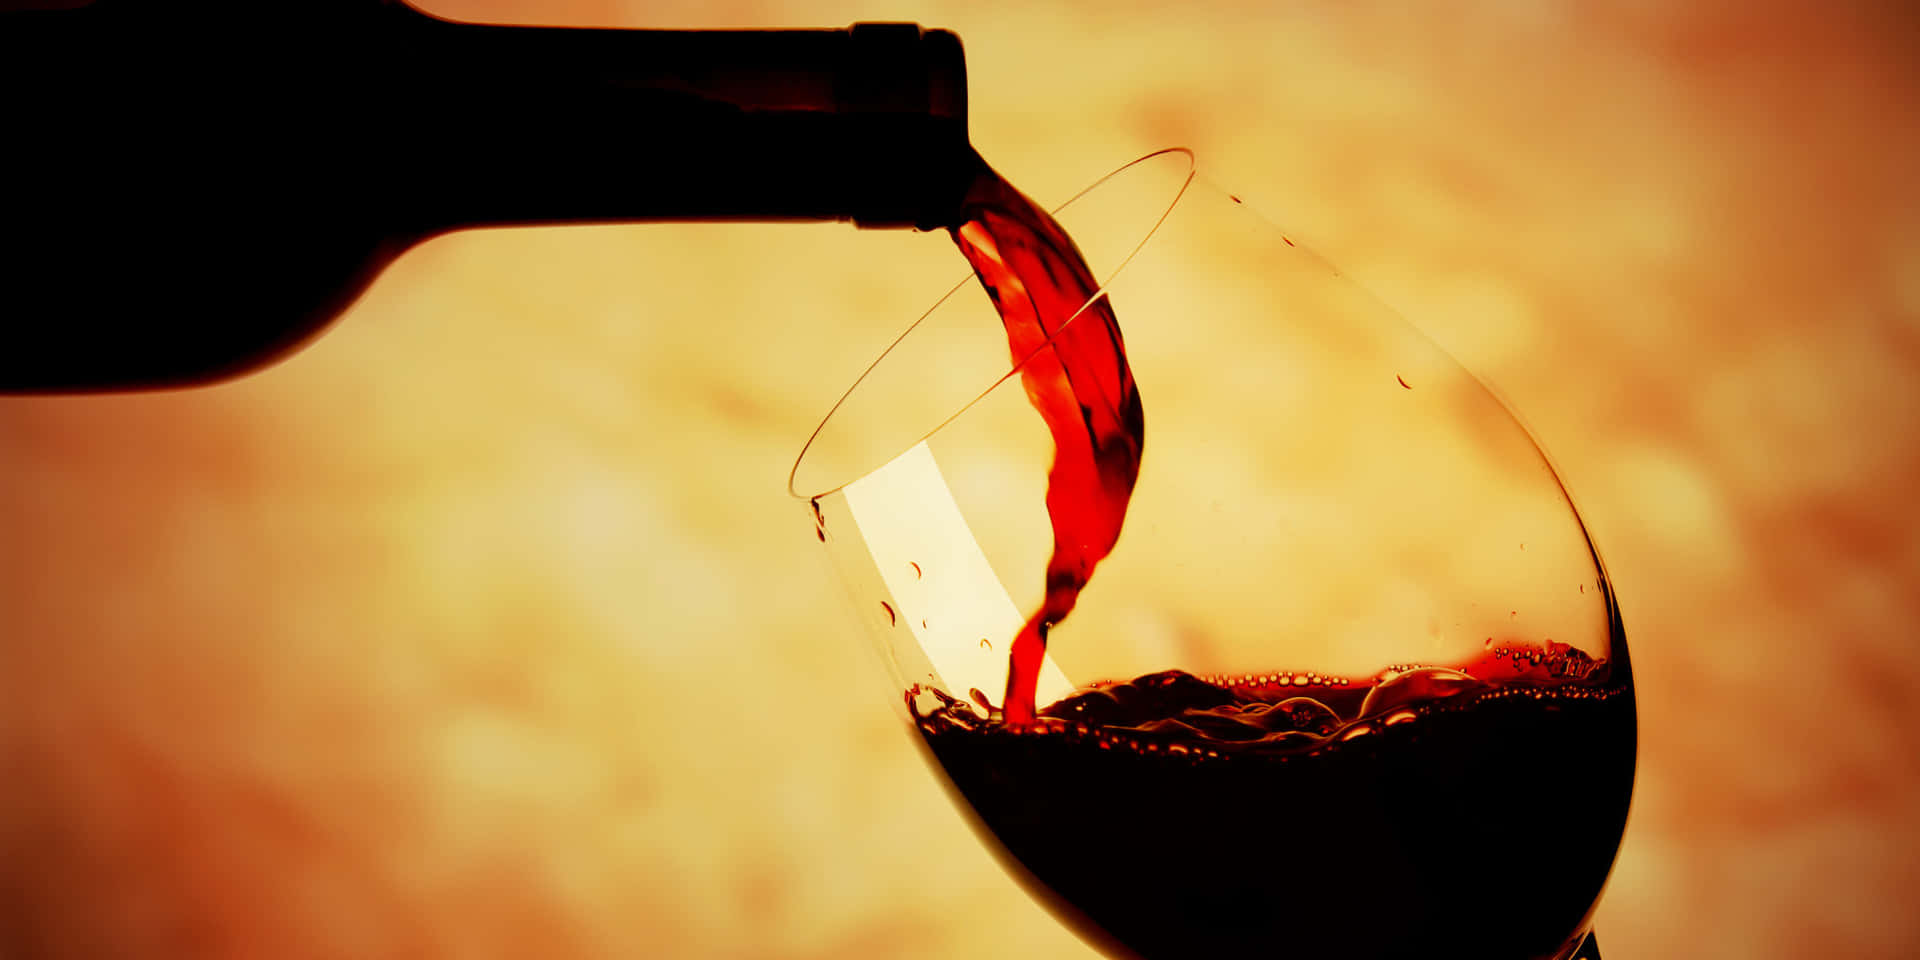 Detbliver Hældt Et Glas Rødvin I Et Glas